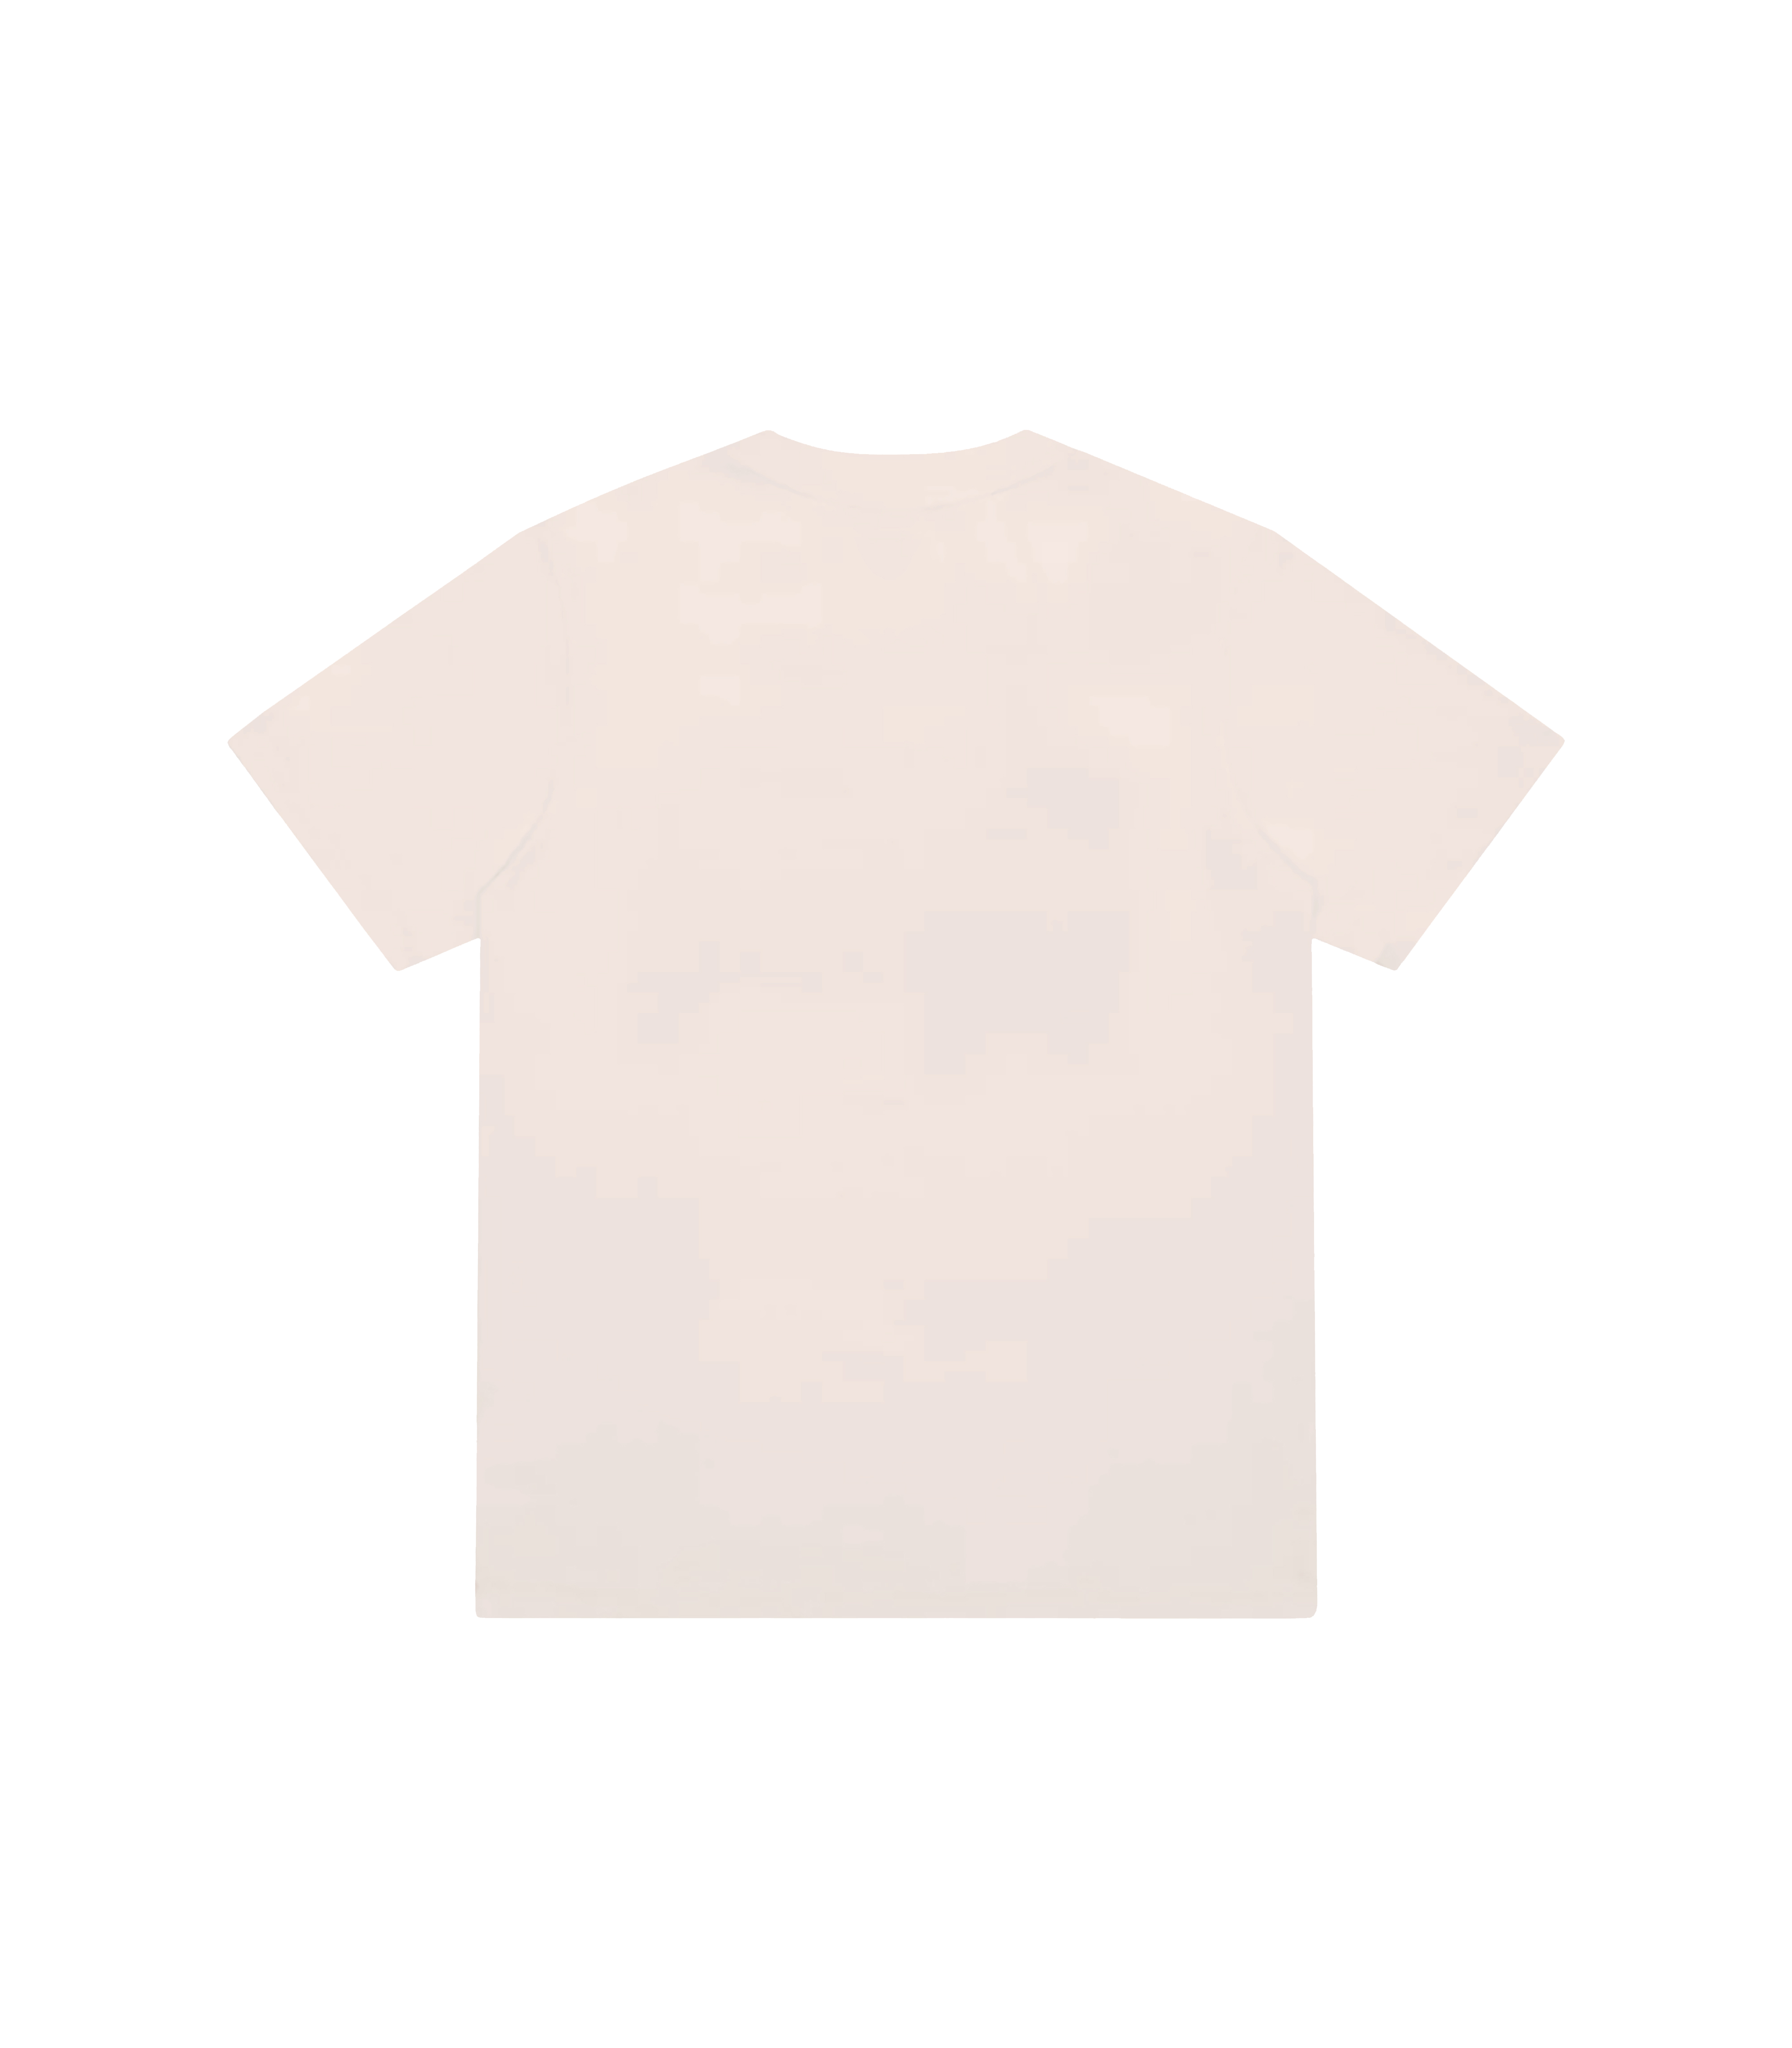 Zorro Stuff T-Shirts Inspiration T-Shirt Off White